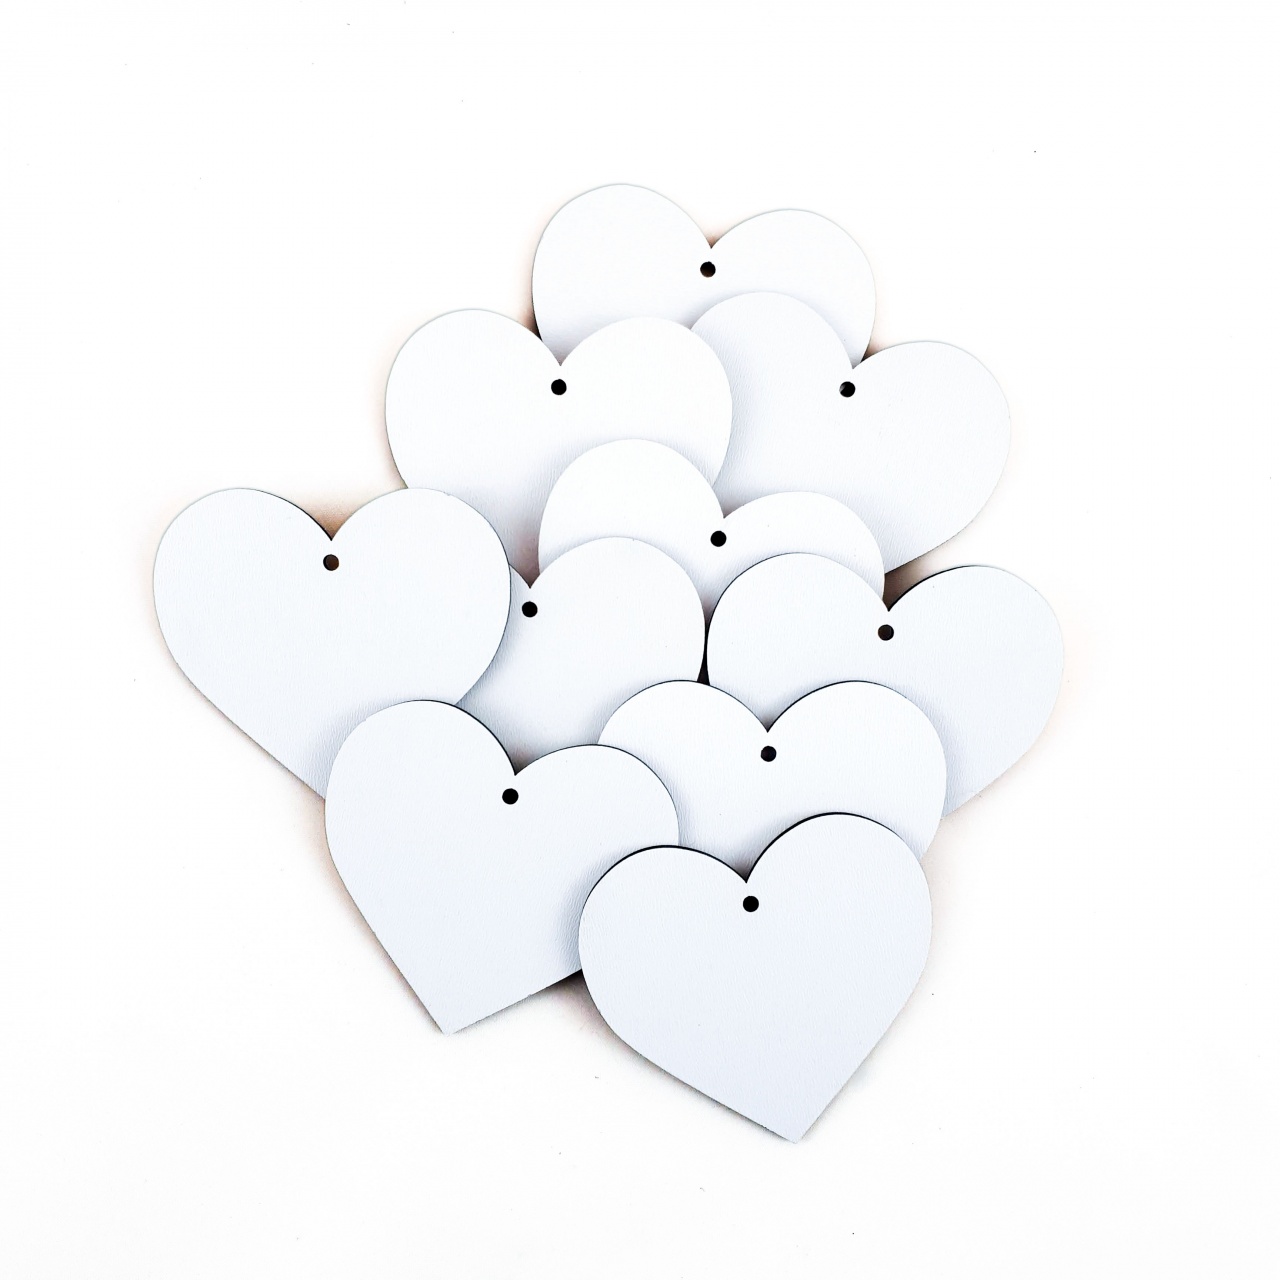 Inimă, 3.7×3.5 cm, MDF alb, 15 buc :: 3.7 cm